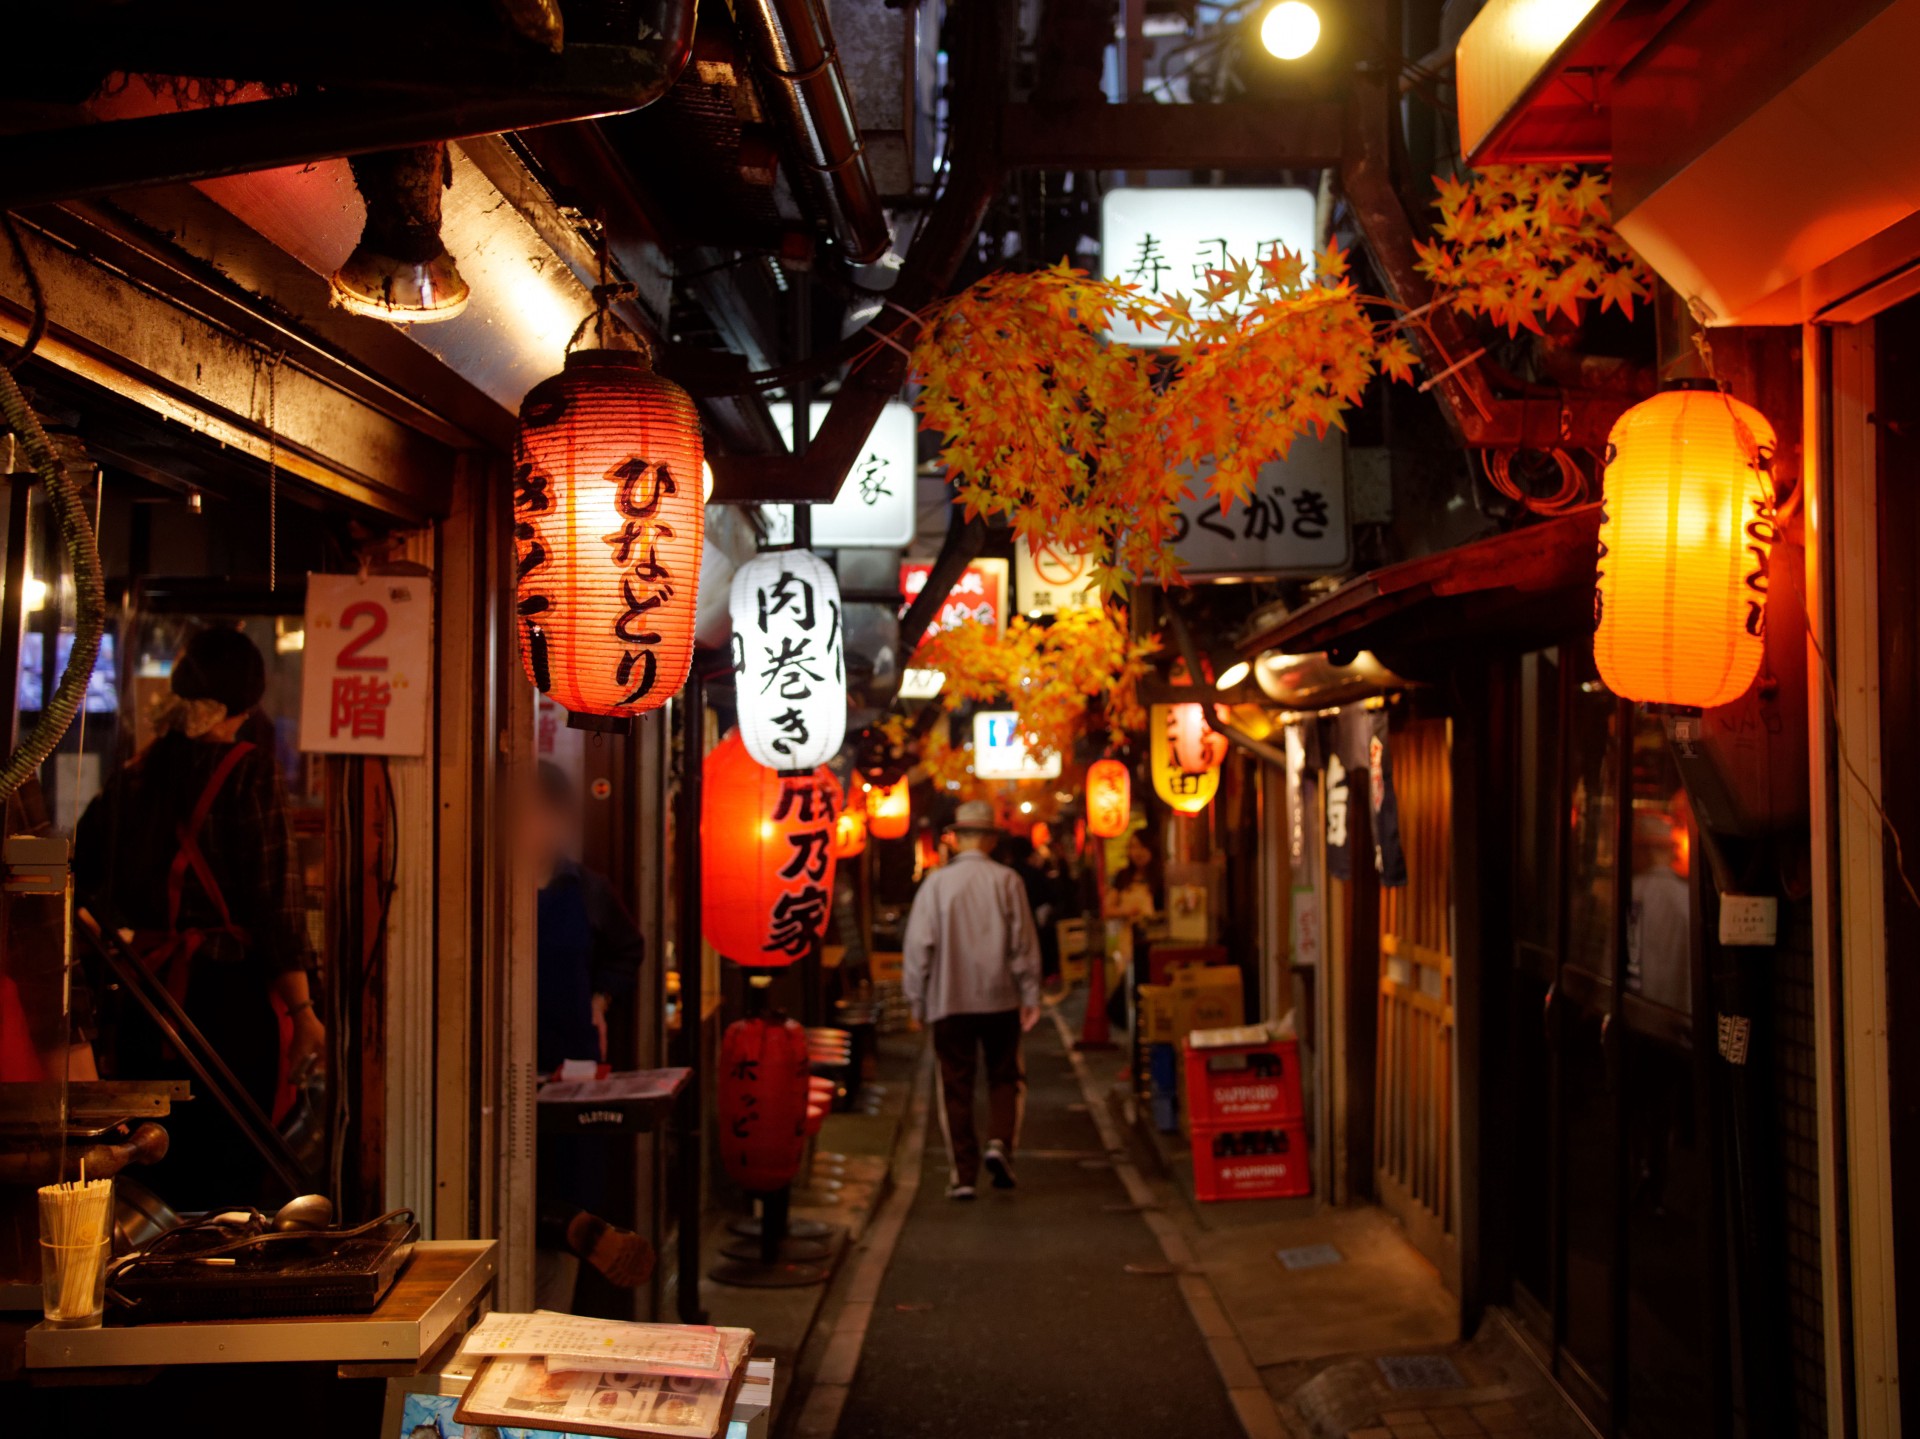 Side-street restaurants in Japan